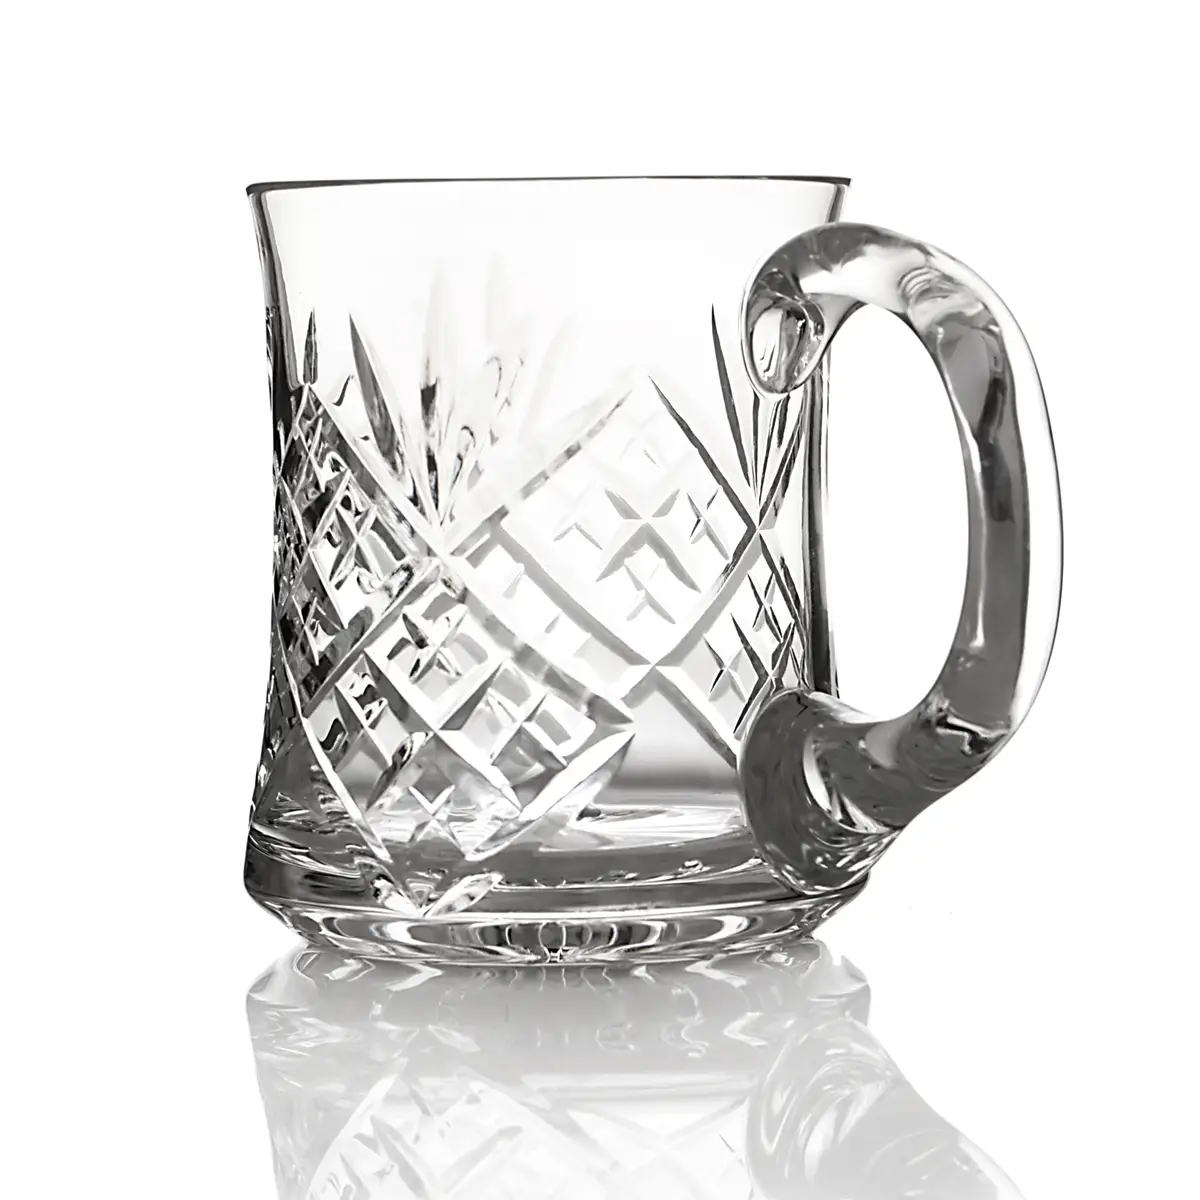 Edinburgh - Handgefertigtes One Pint Bierglas - Kristallglas mit Diamantschliff